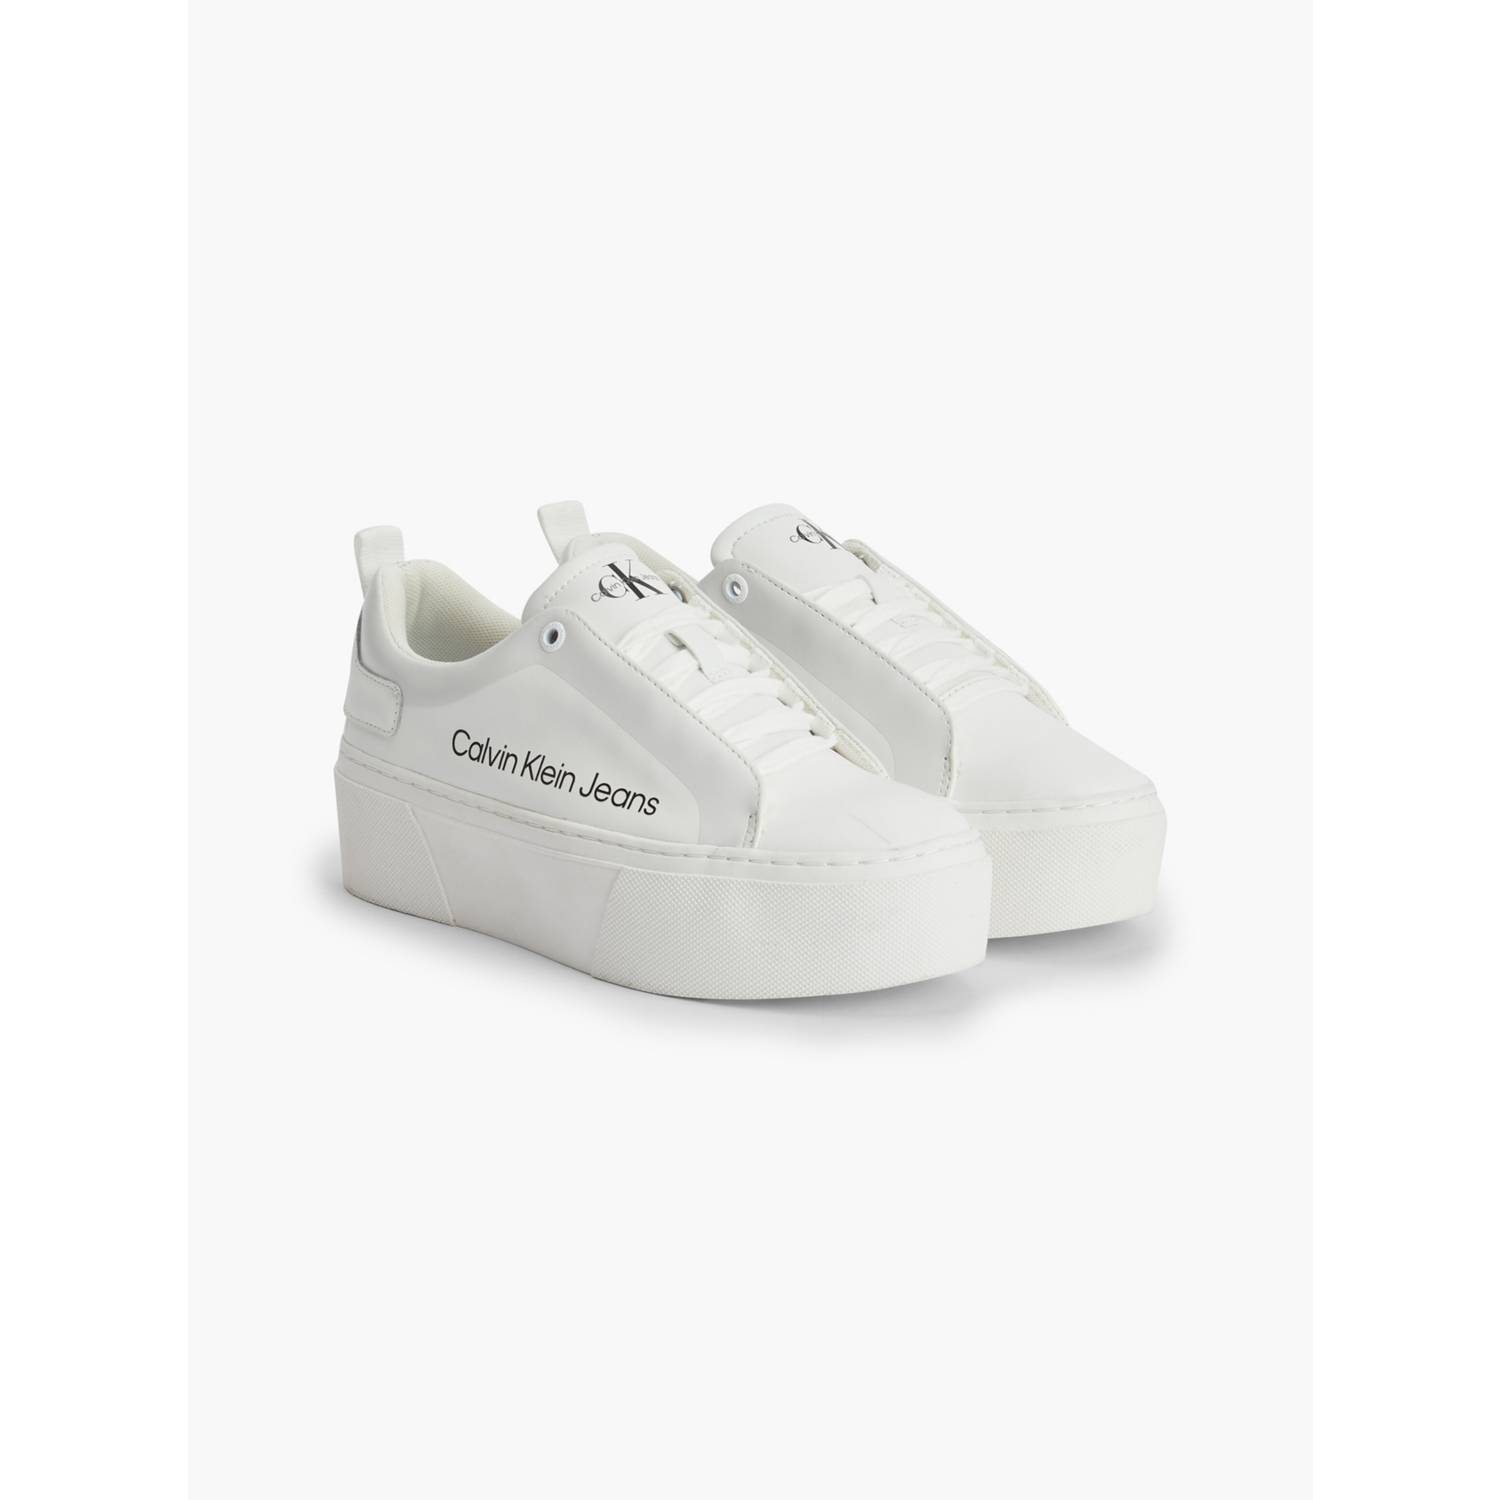 Calvin Klein - Zapatillas Para Mujer Blanca - Casual Cupsole Irregular Lines